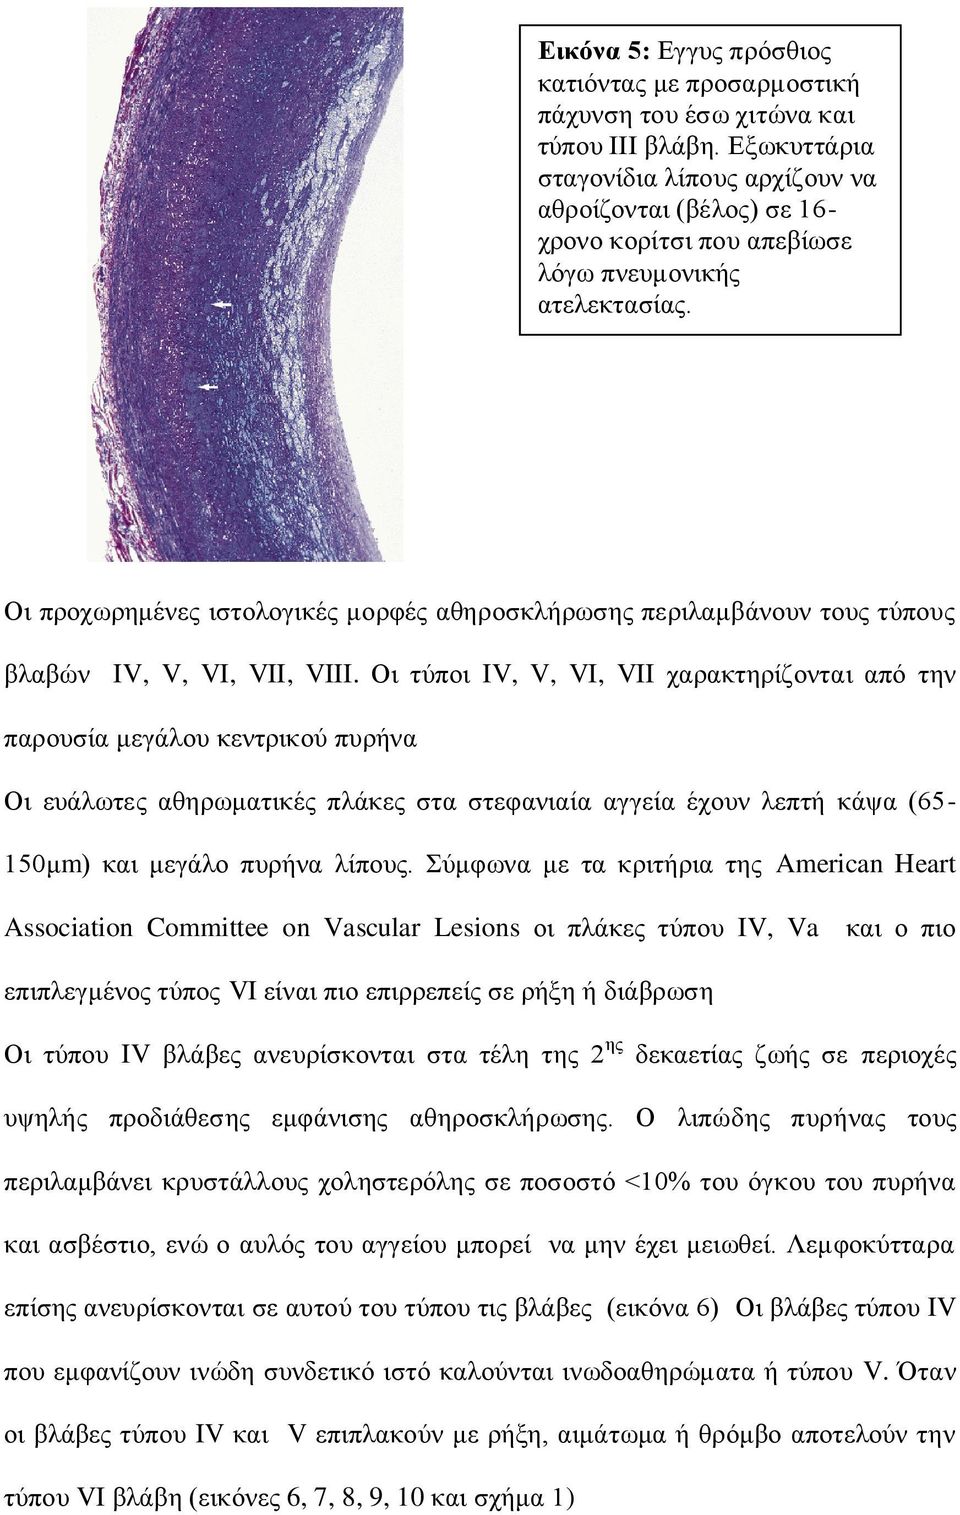 Οη πξνρσξεκέλεο ηζηνινγηθέο κνξθέο αζεξνζθιήξσζεο πεξηιακβάλνπλ ηνπο ηύπνπο βιαβώλ IV, V, VI, VII, VIII.